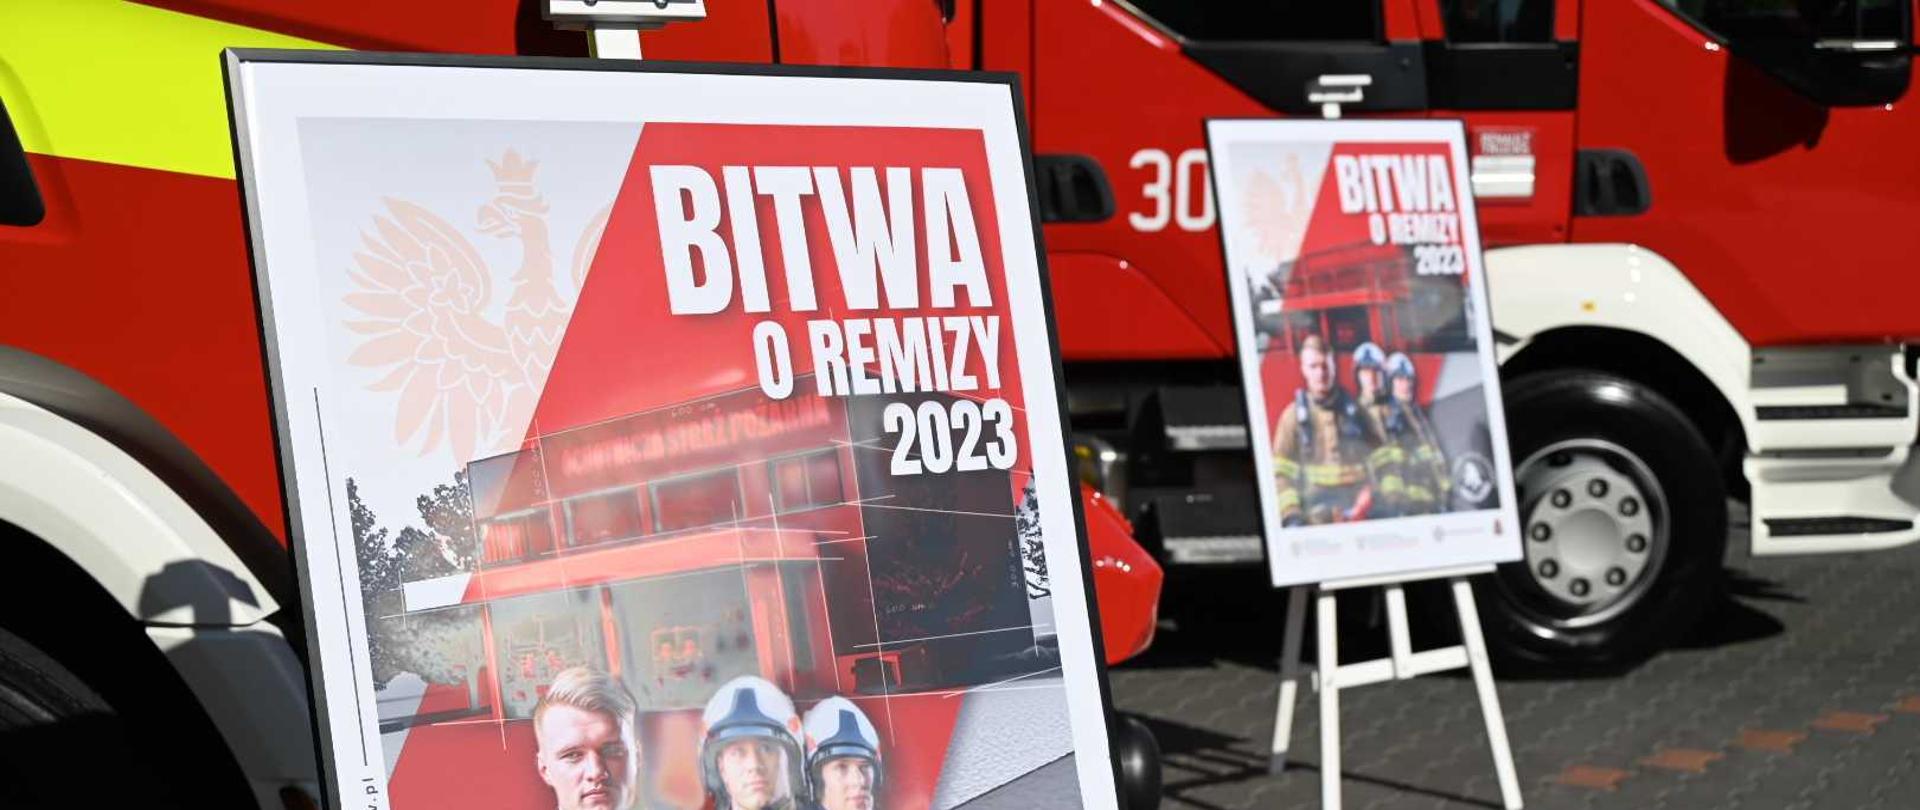 Dwa plakaty promocyjne akcji Bitwa o Remizy 2023 na tle dwóch pojazdów pożarniczych.